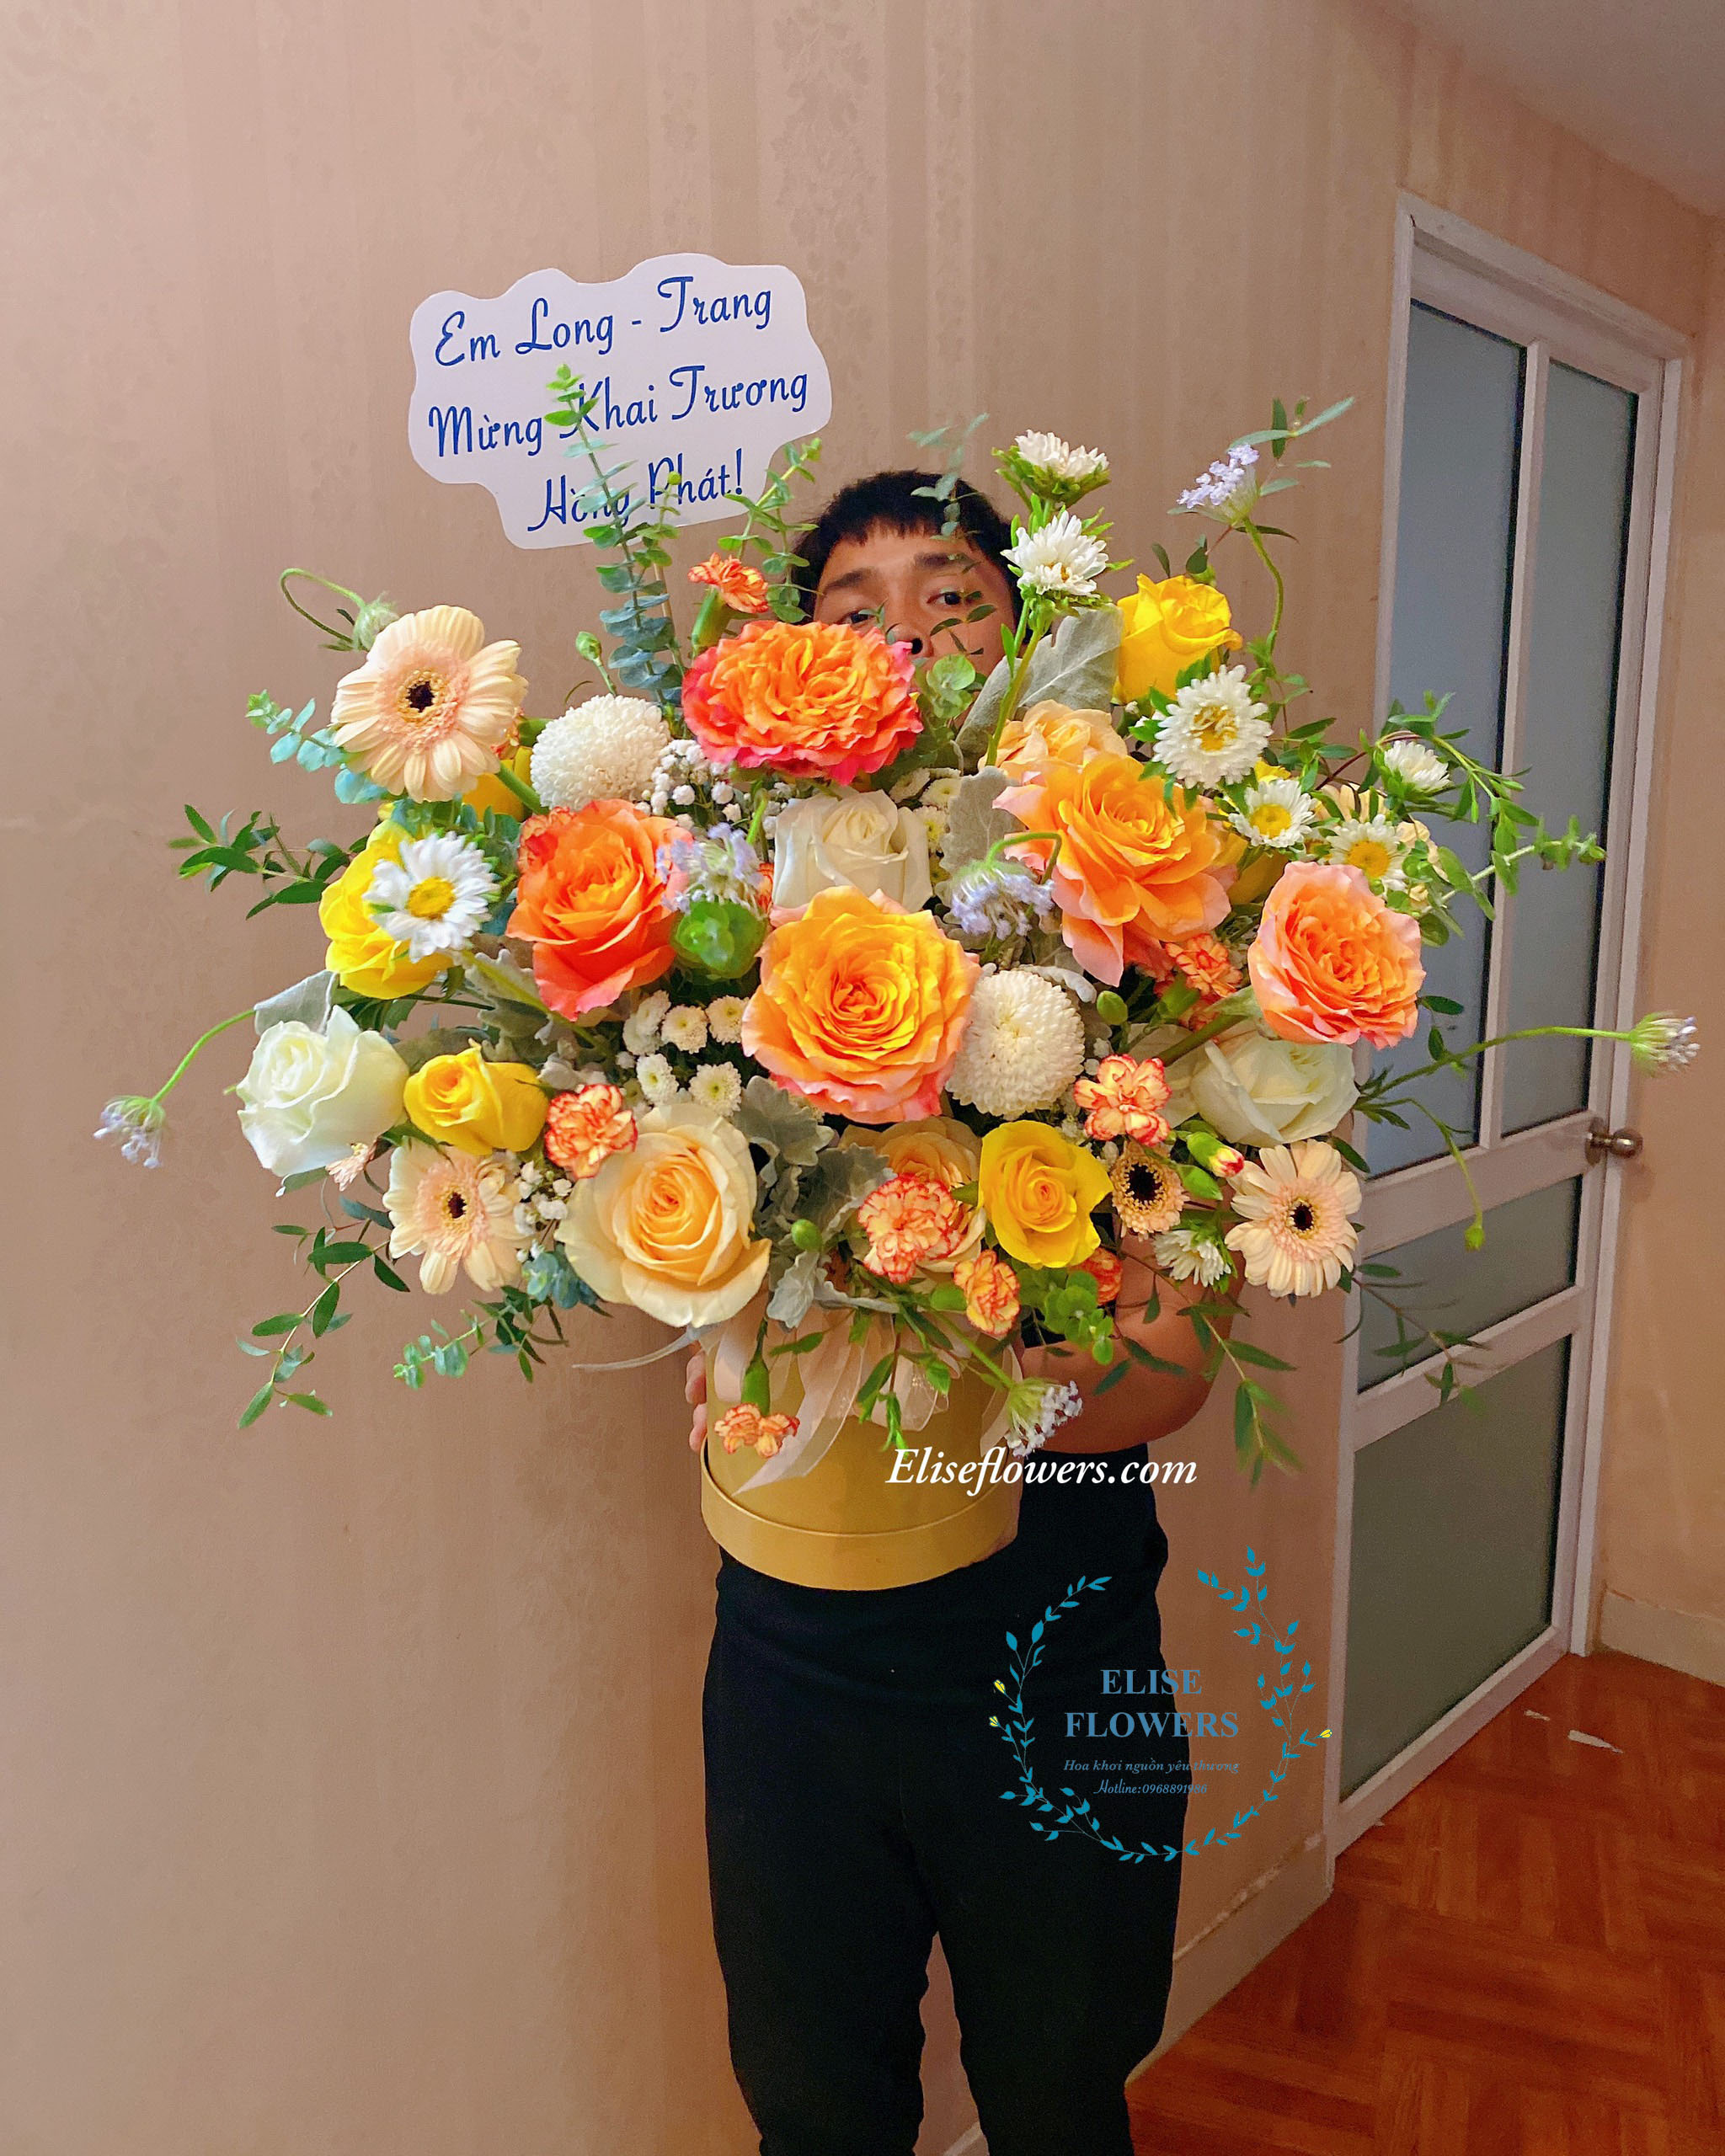 Hoa sinh nhật quận Nam Từ LiêmLẵng hoa tặng sếpđối tác ở Nam Từ Liêm  Hoa  khai trương  Hoa khai trương đẹp ở Hà Nội